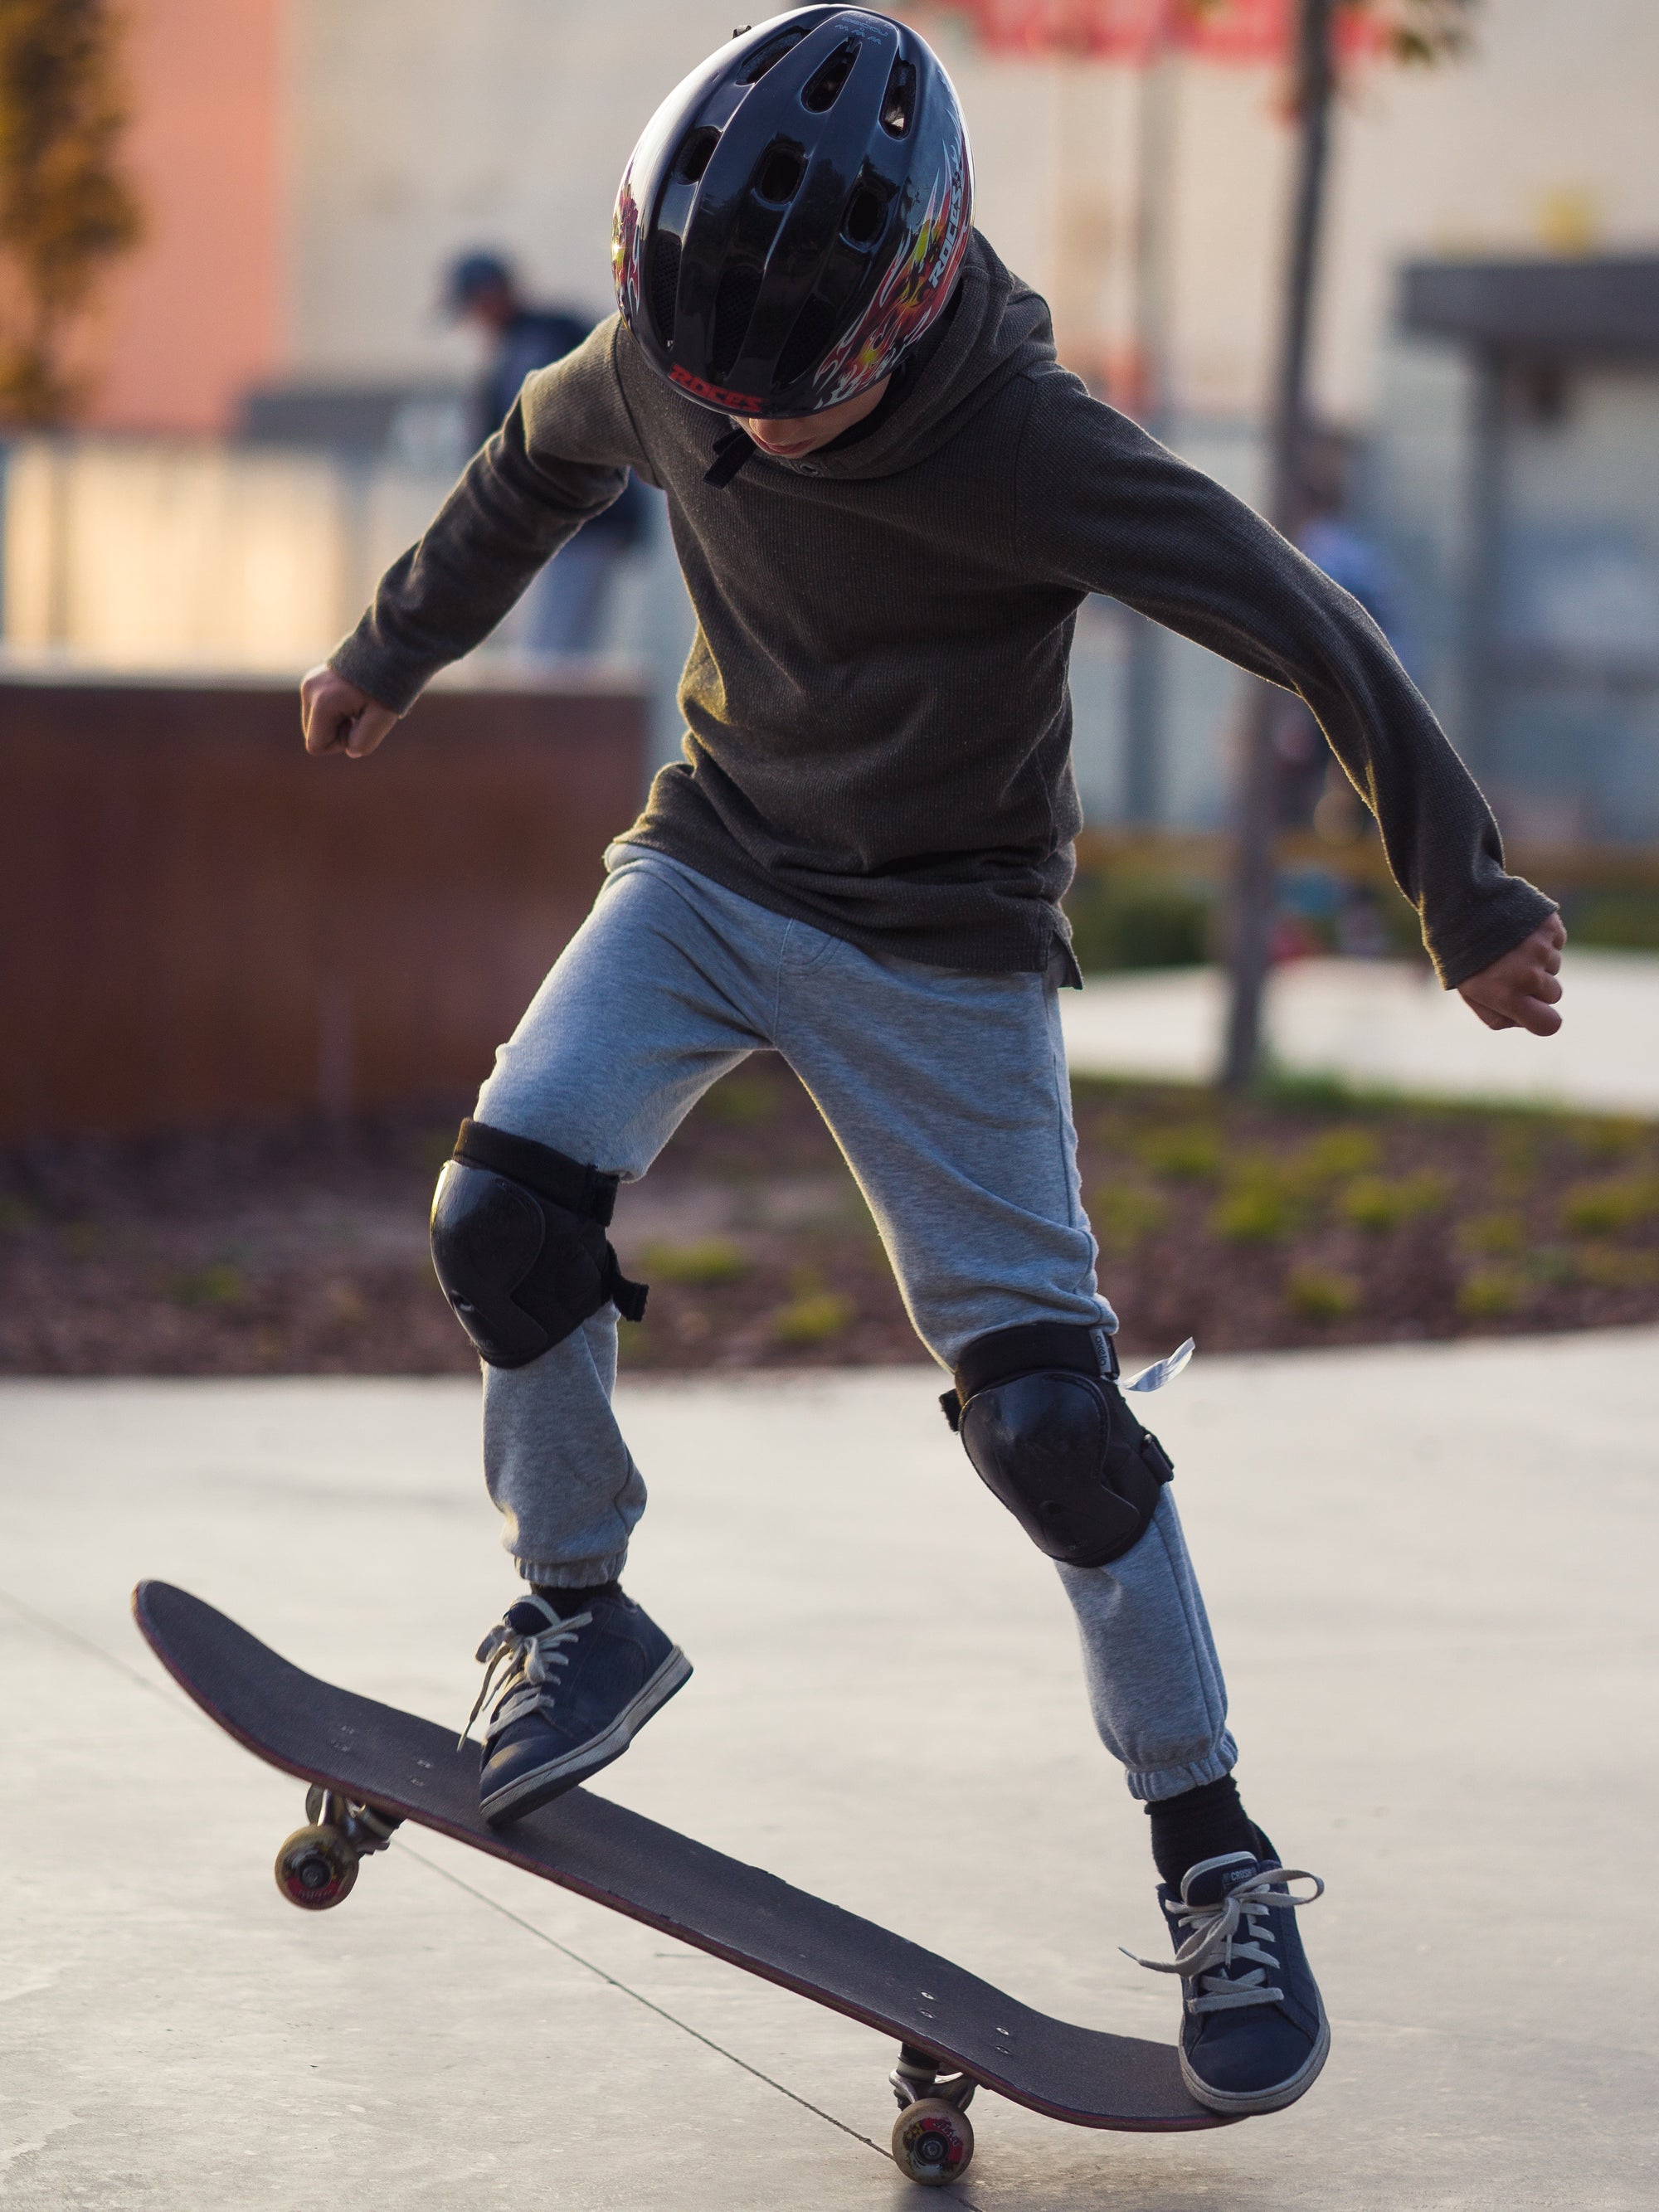 Knee Pads For Skateboarding [Rad Guide]